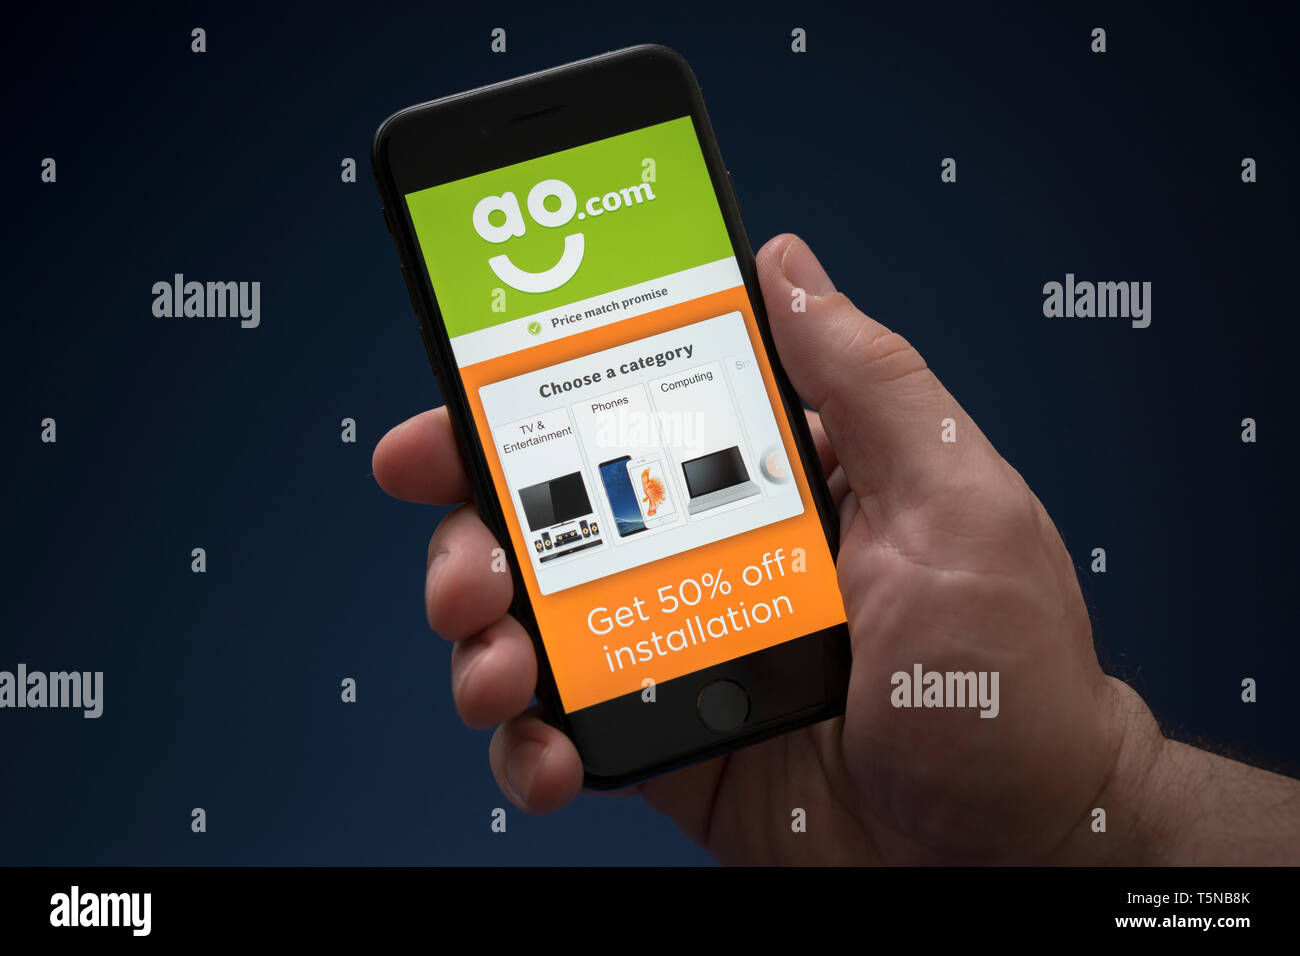 Ein Mann schaut auf seinem iPhone die zeigt die AO.com Logo (nur redaktionelle Nutzung). Stockfoto